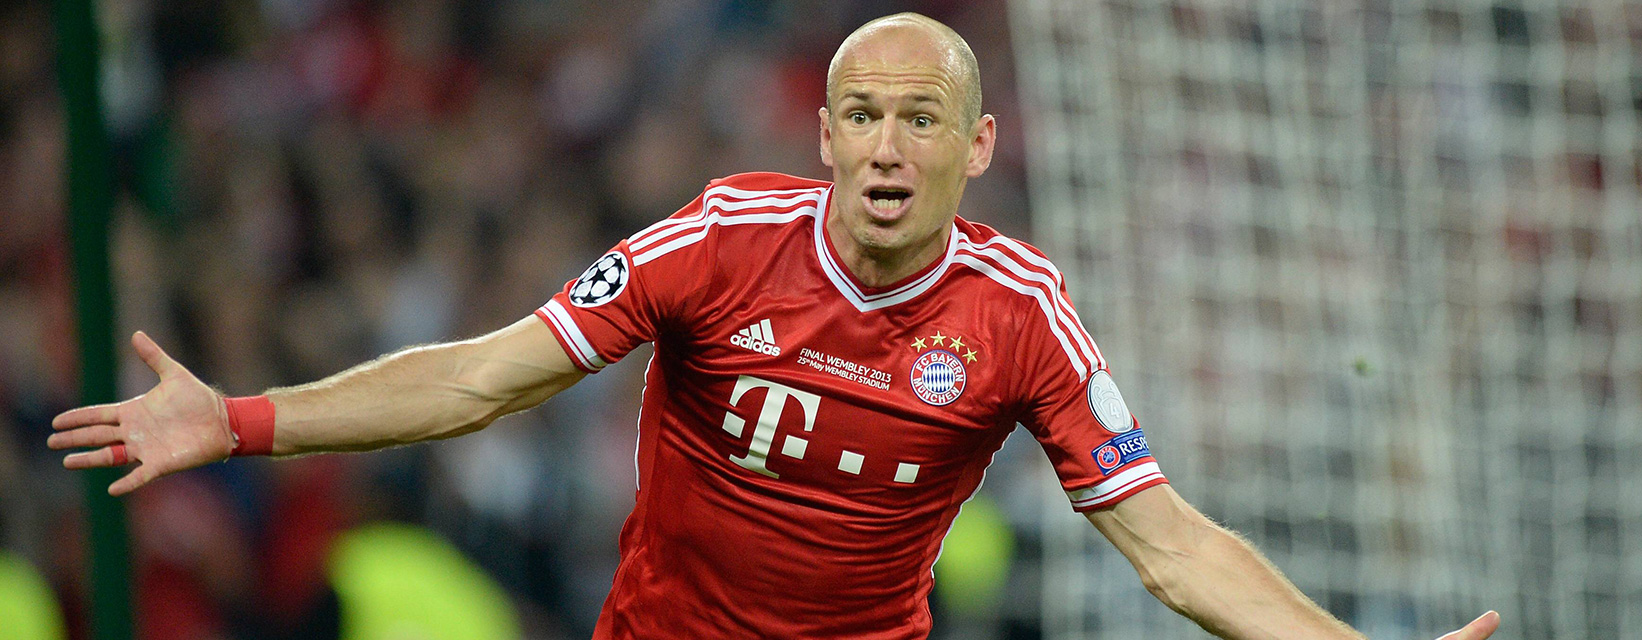 Robben is blij: hij heeft zojuist de 2-1 gemaakt in de Champions League tegen Borussia Dortmund. Het zou de winnende blijken.